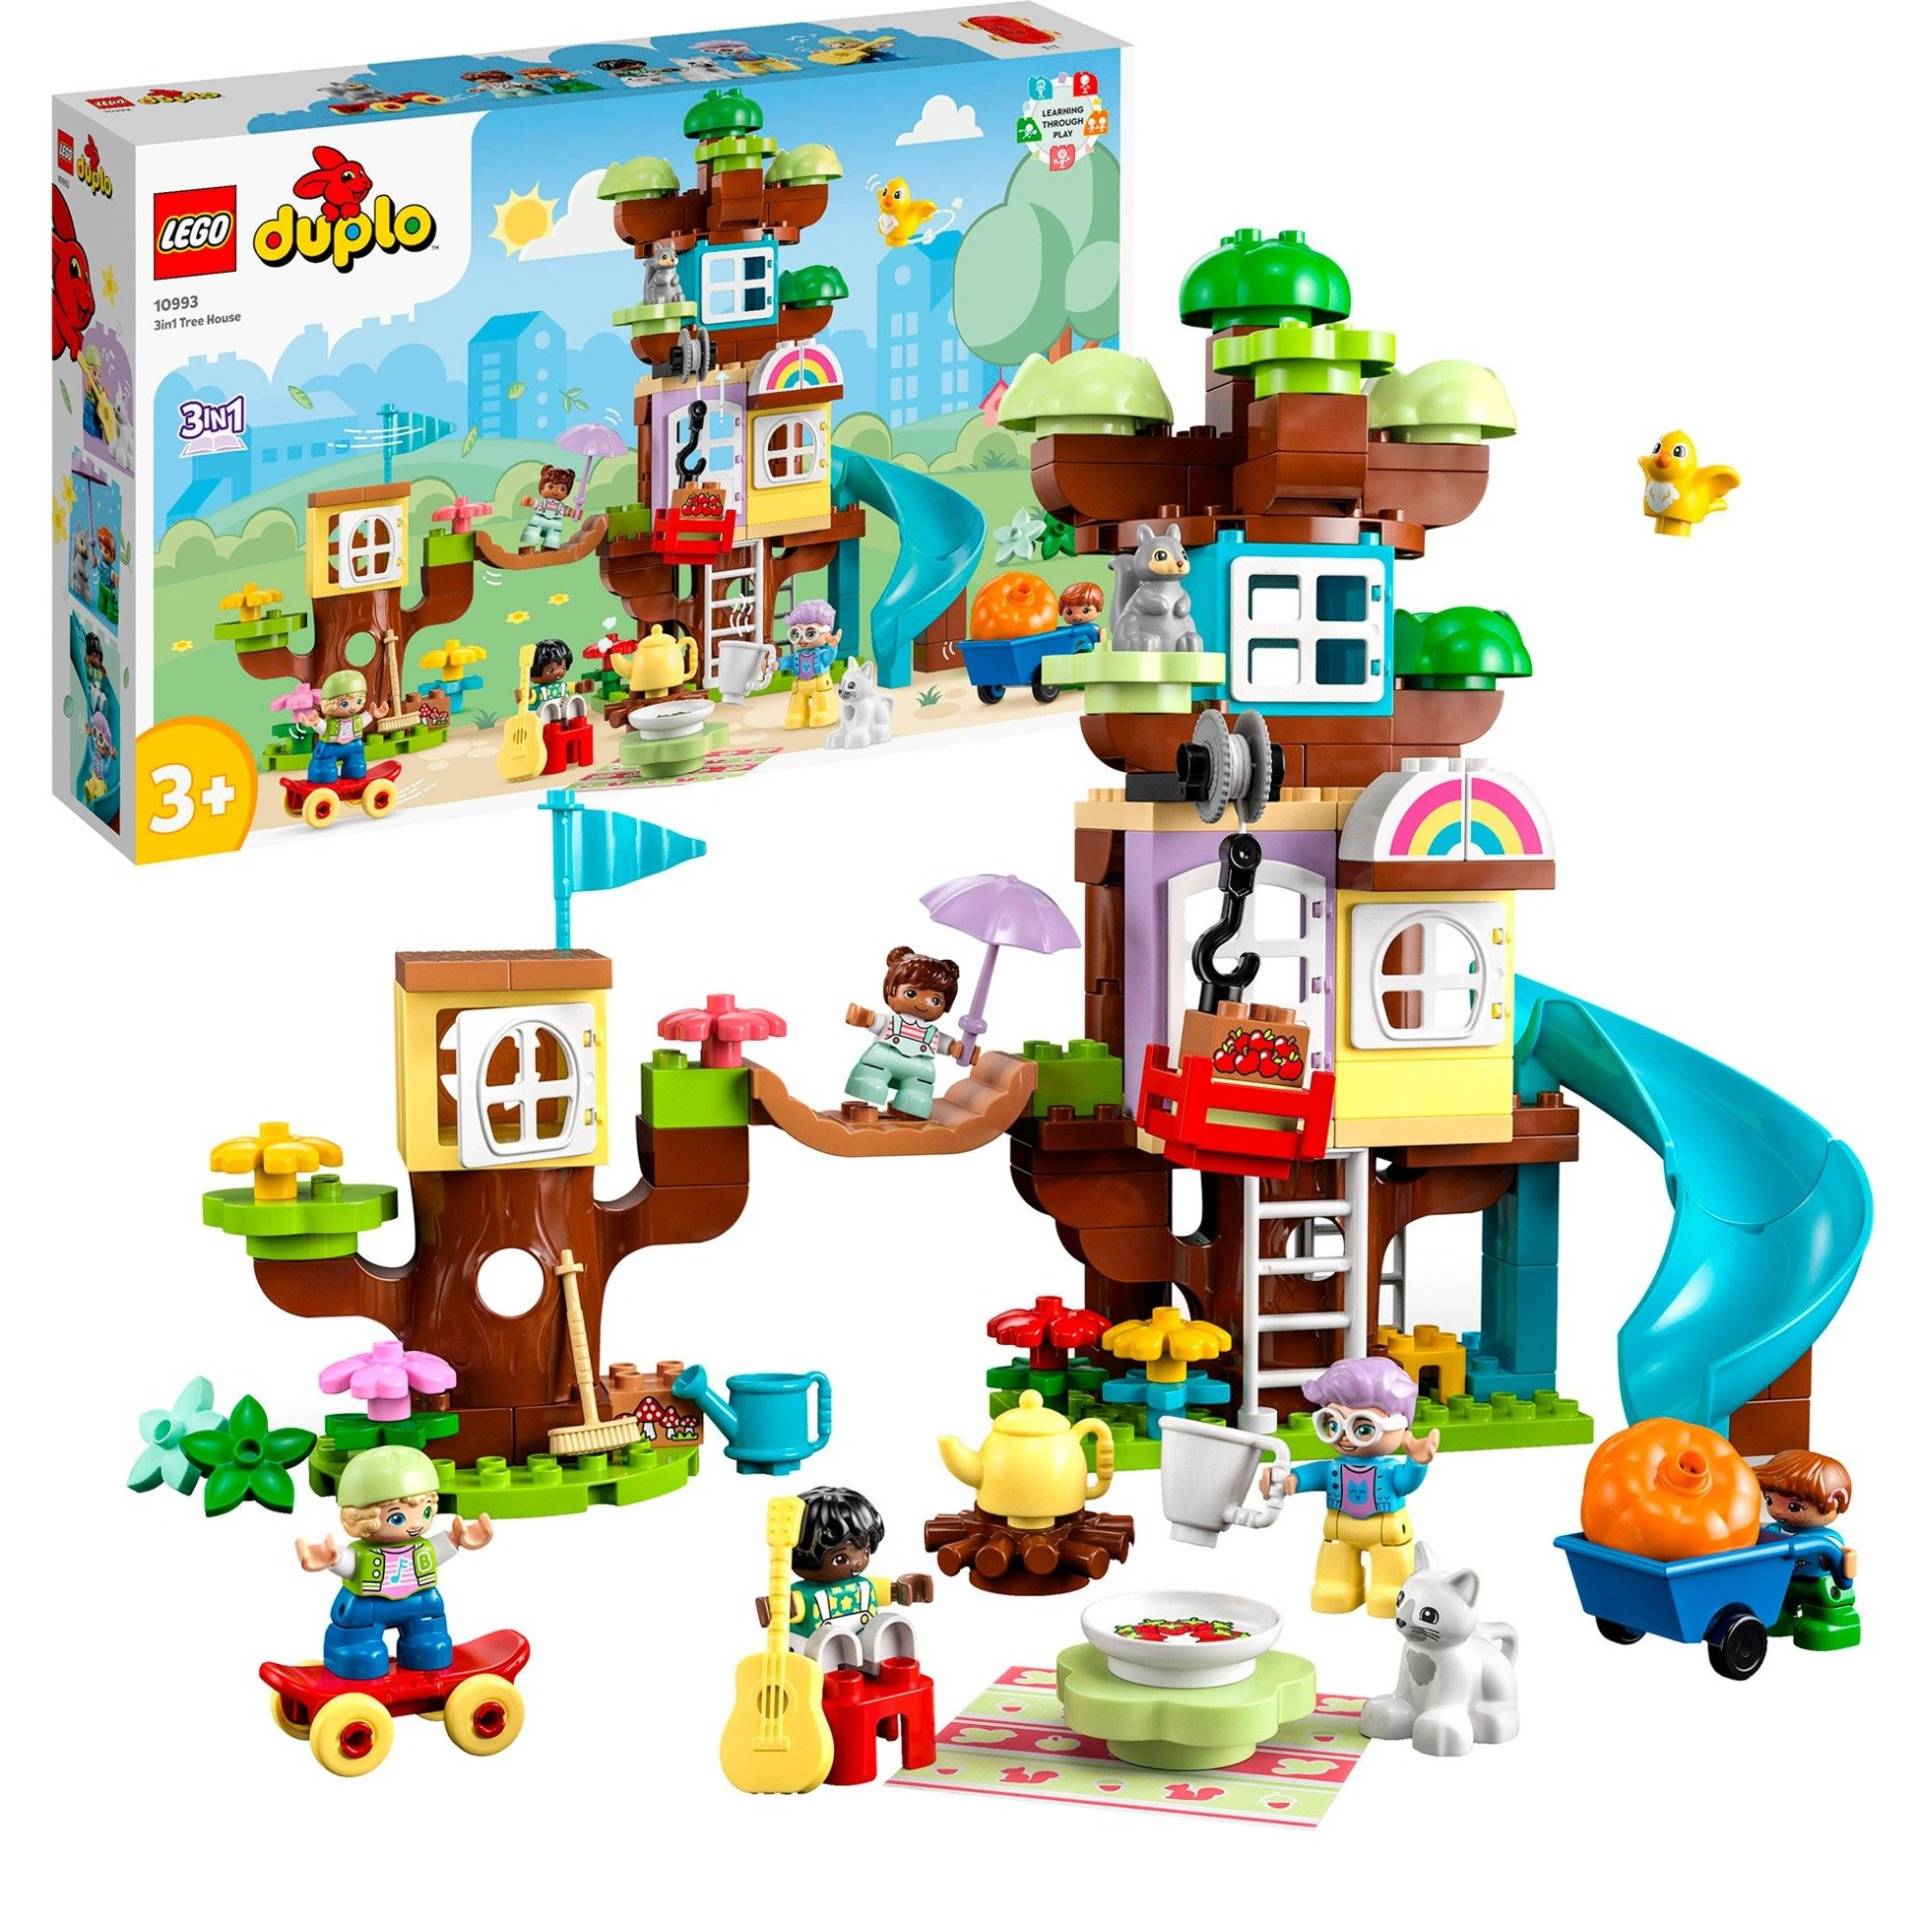 10993 DUPLO 3-in-1-Baumhaus, Konstruktionsspielzeug von Lego